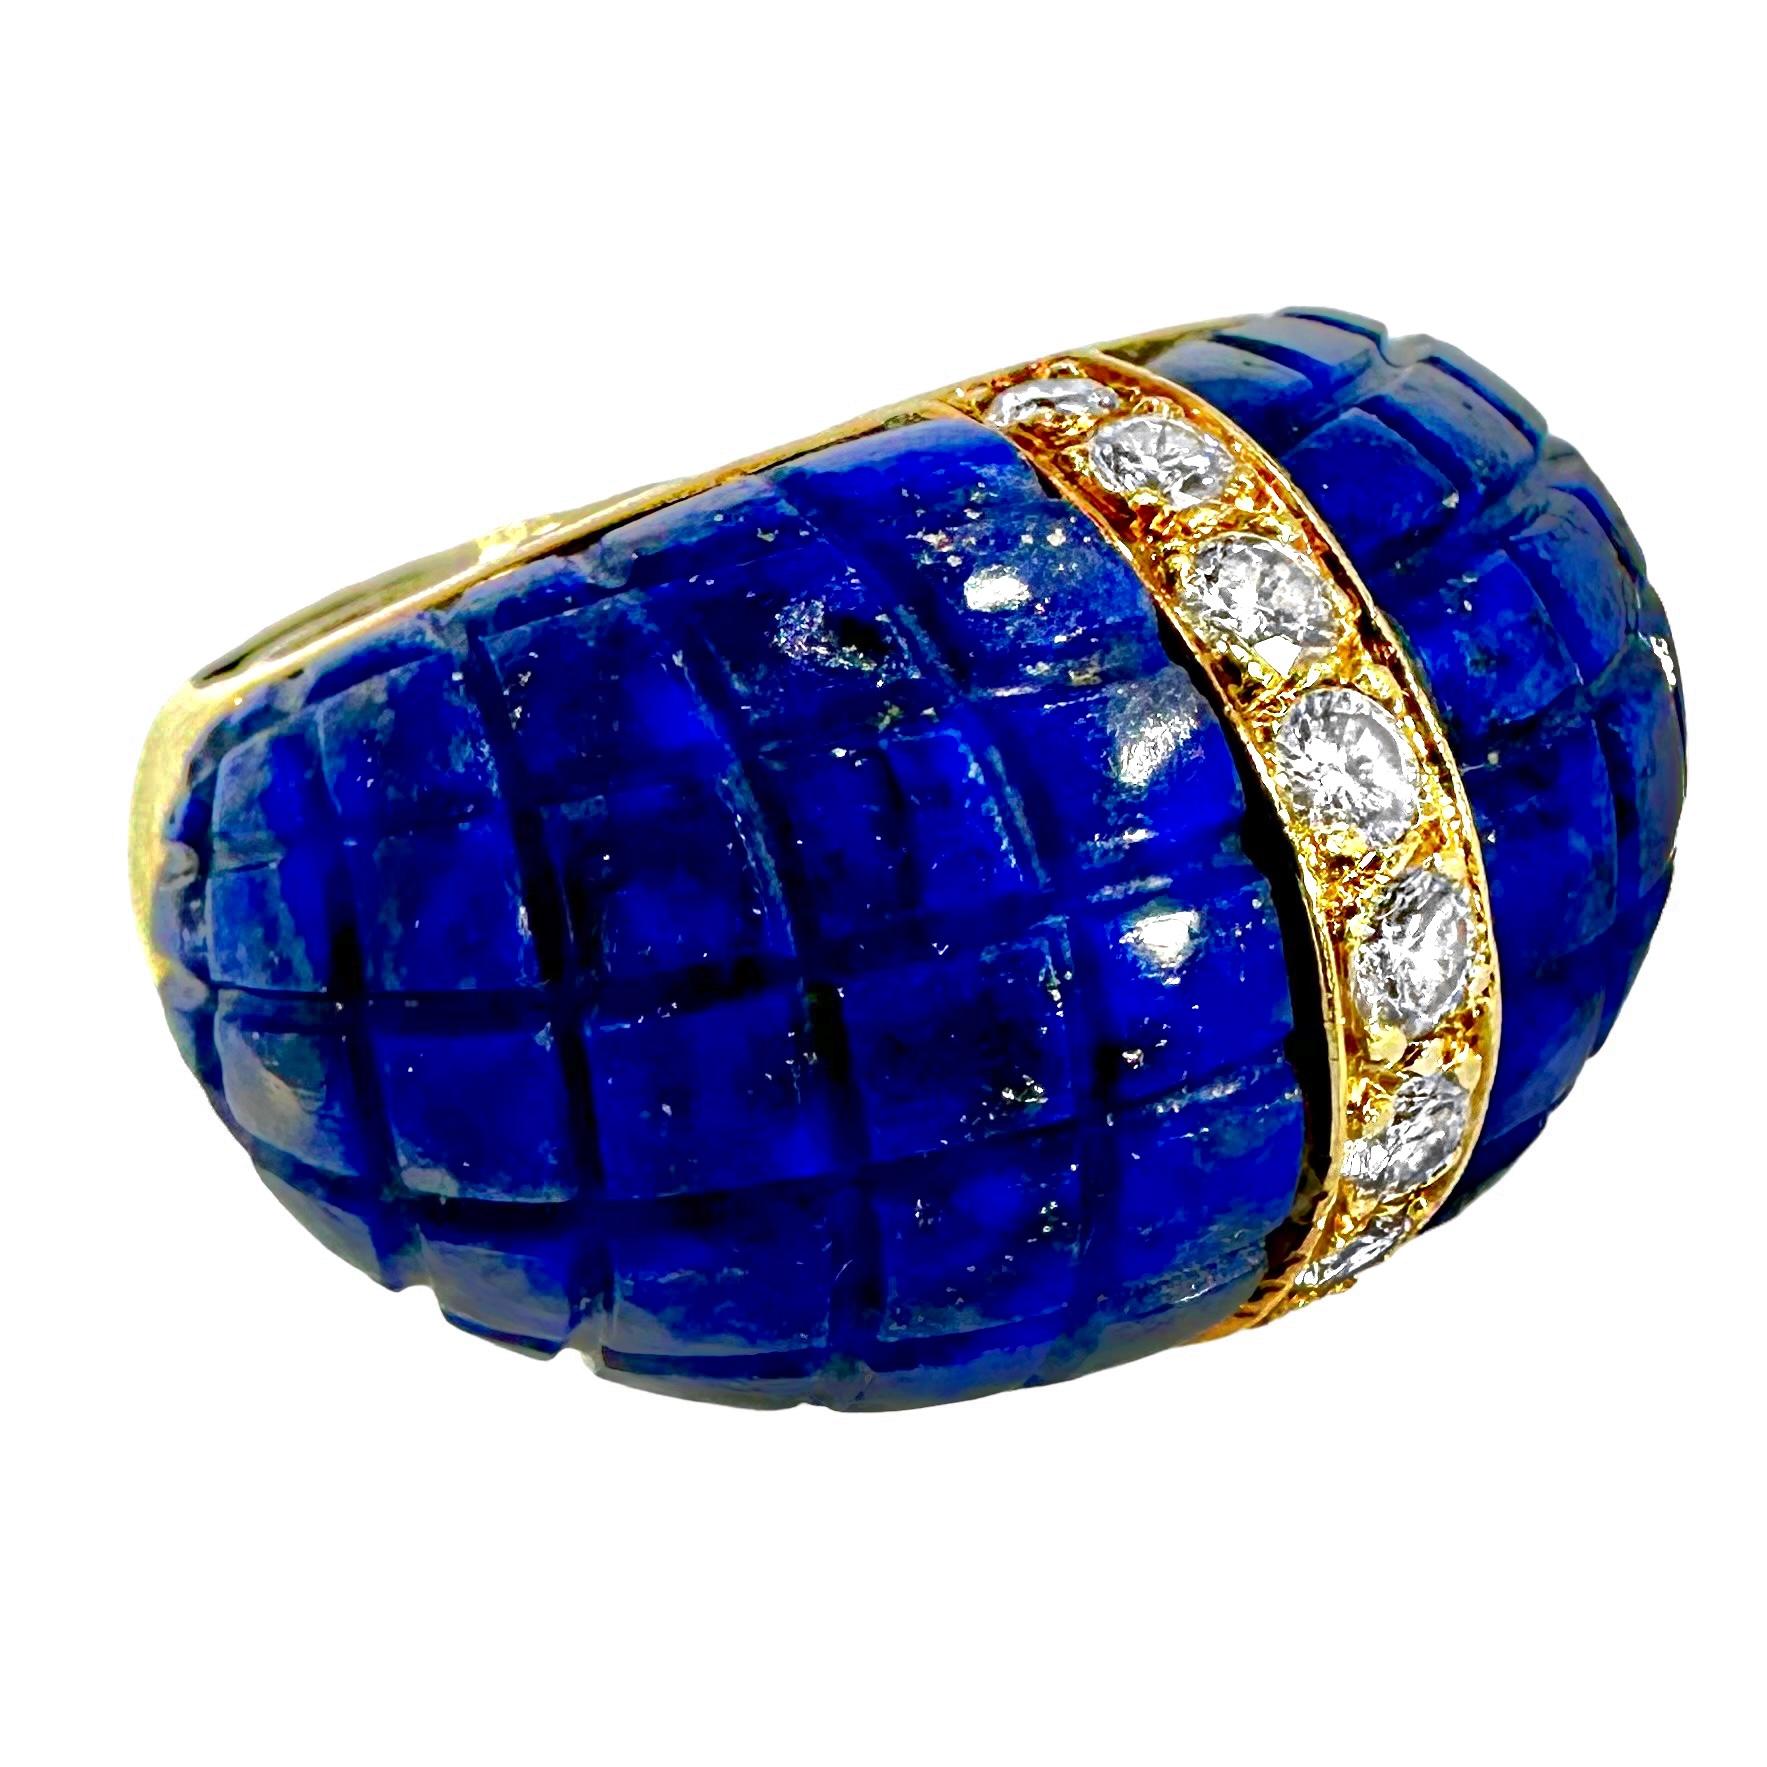 Diese sehr stilvolle italienische Vintage-Kreation aus 18 Karat Gelbgold, Lapis-Lazuli und Diamanten besteht aus einer zentralen Reihe von neun runden Diamanten im Brillantschliff, die auf beiden Seiten von großen bombierten Flächen aus sattblauem